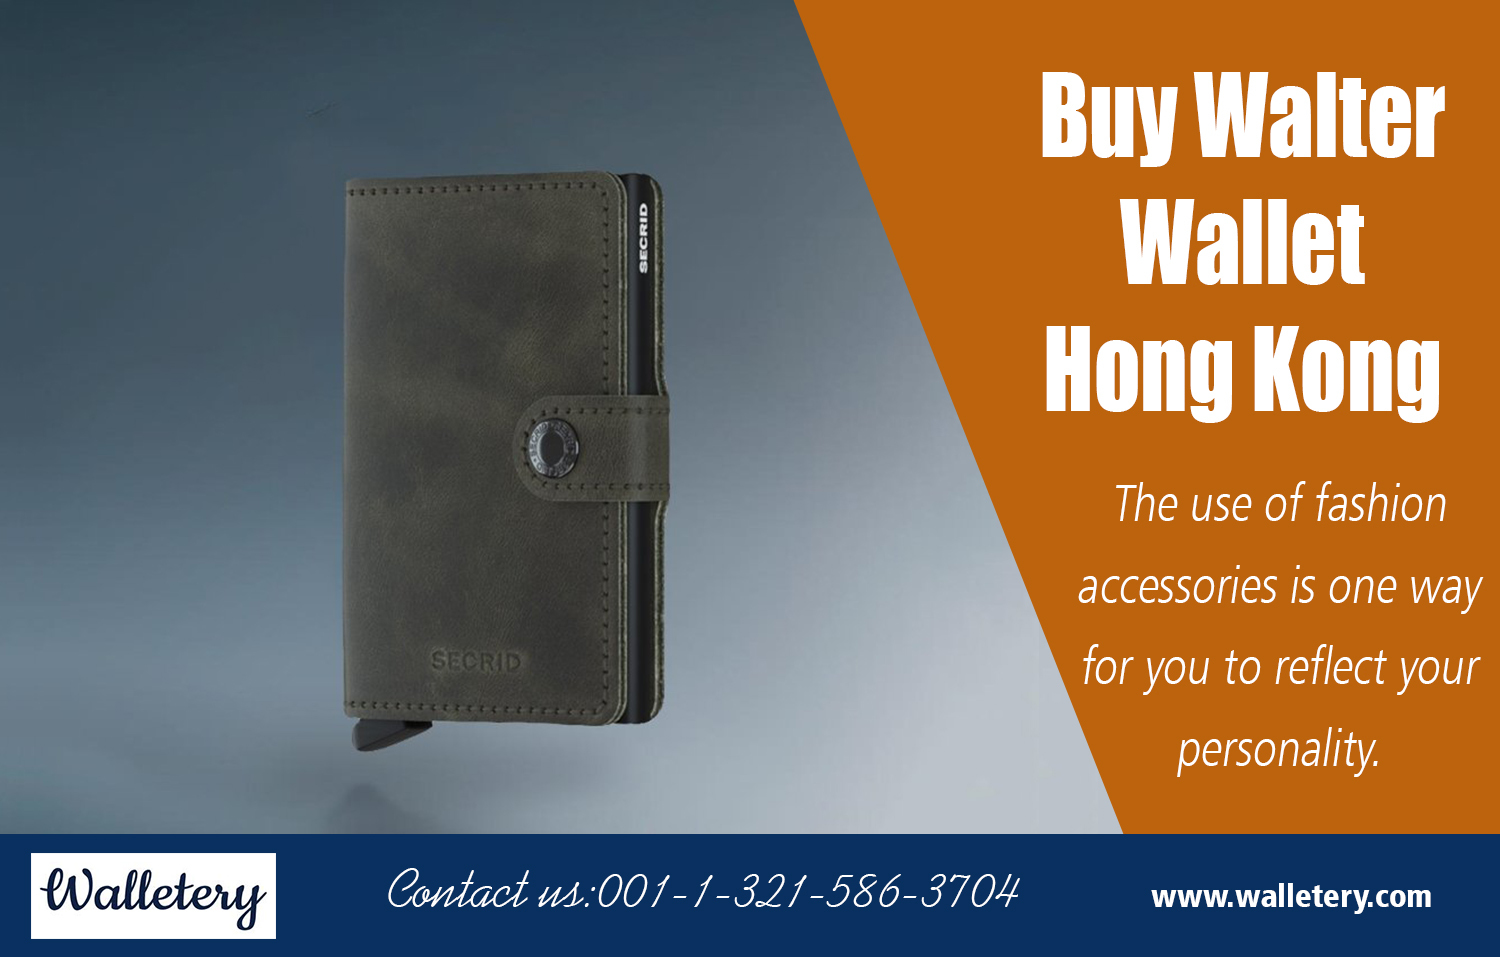 Buy Walter Wallet Hong Kong